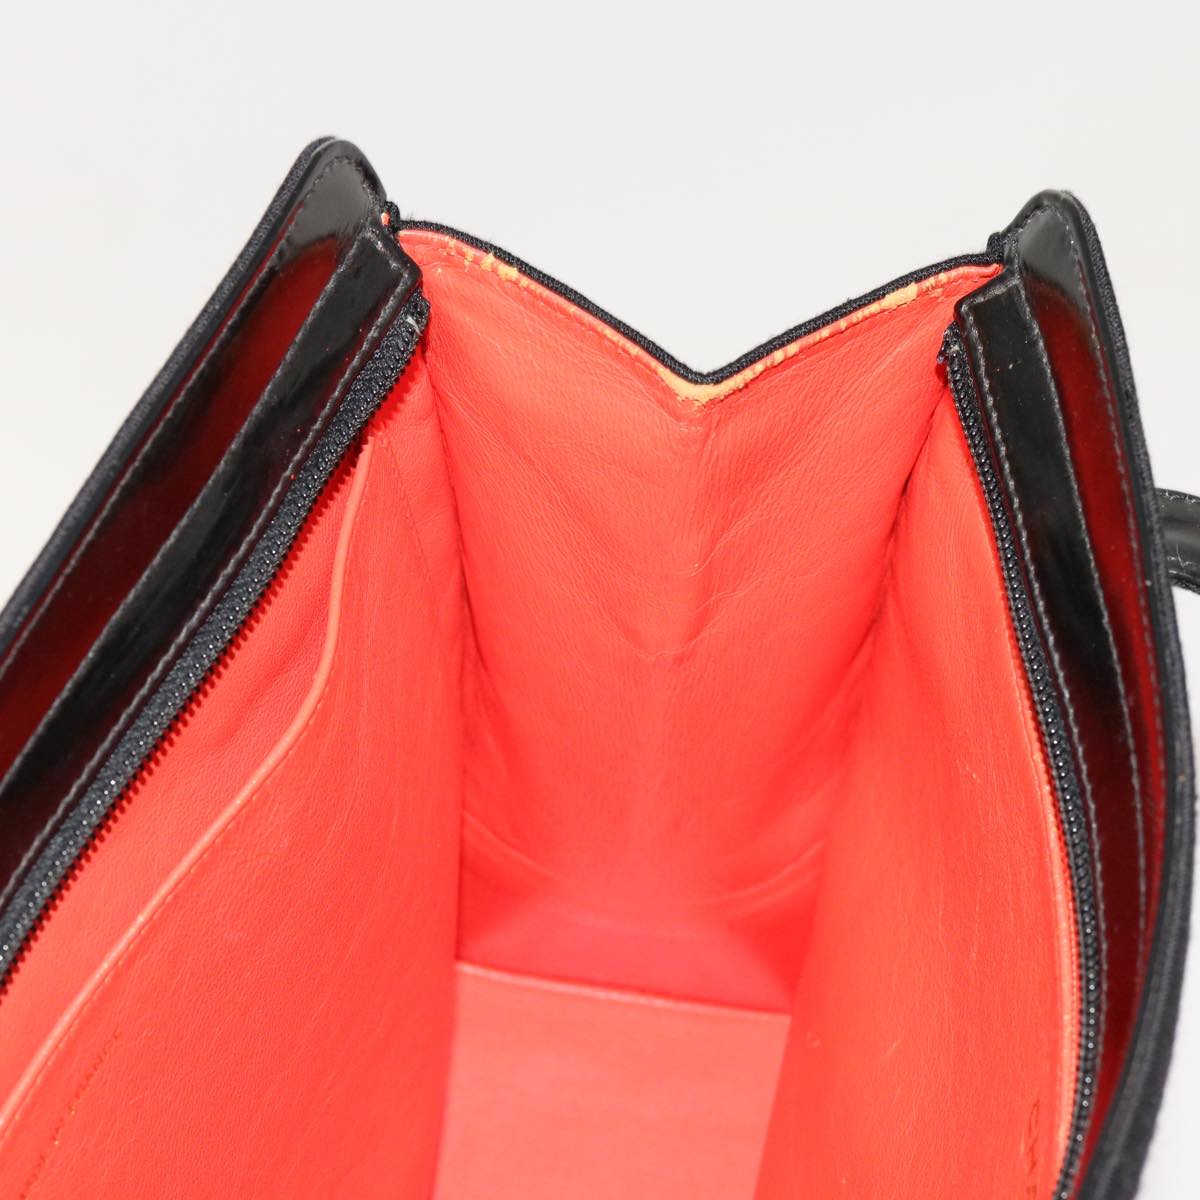 CHANEL Shoulder Bag Cotton Black CC Auth bs13024